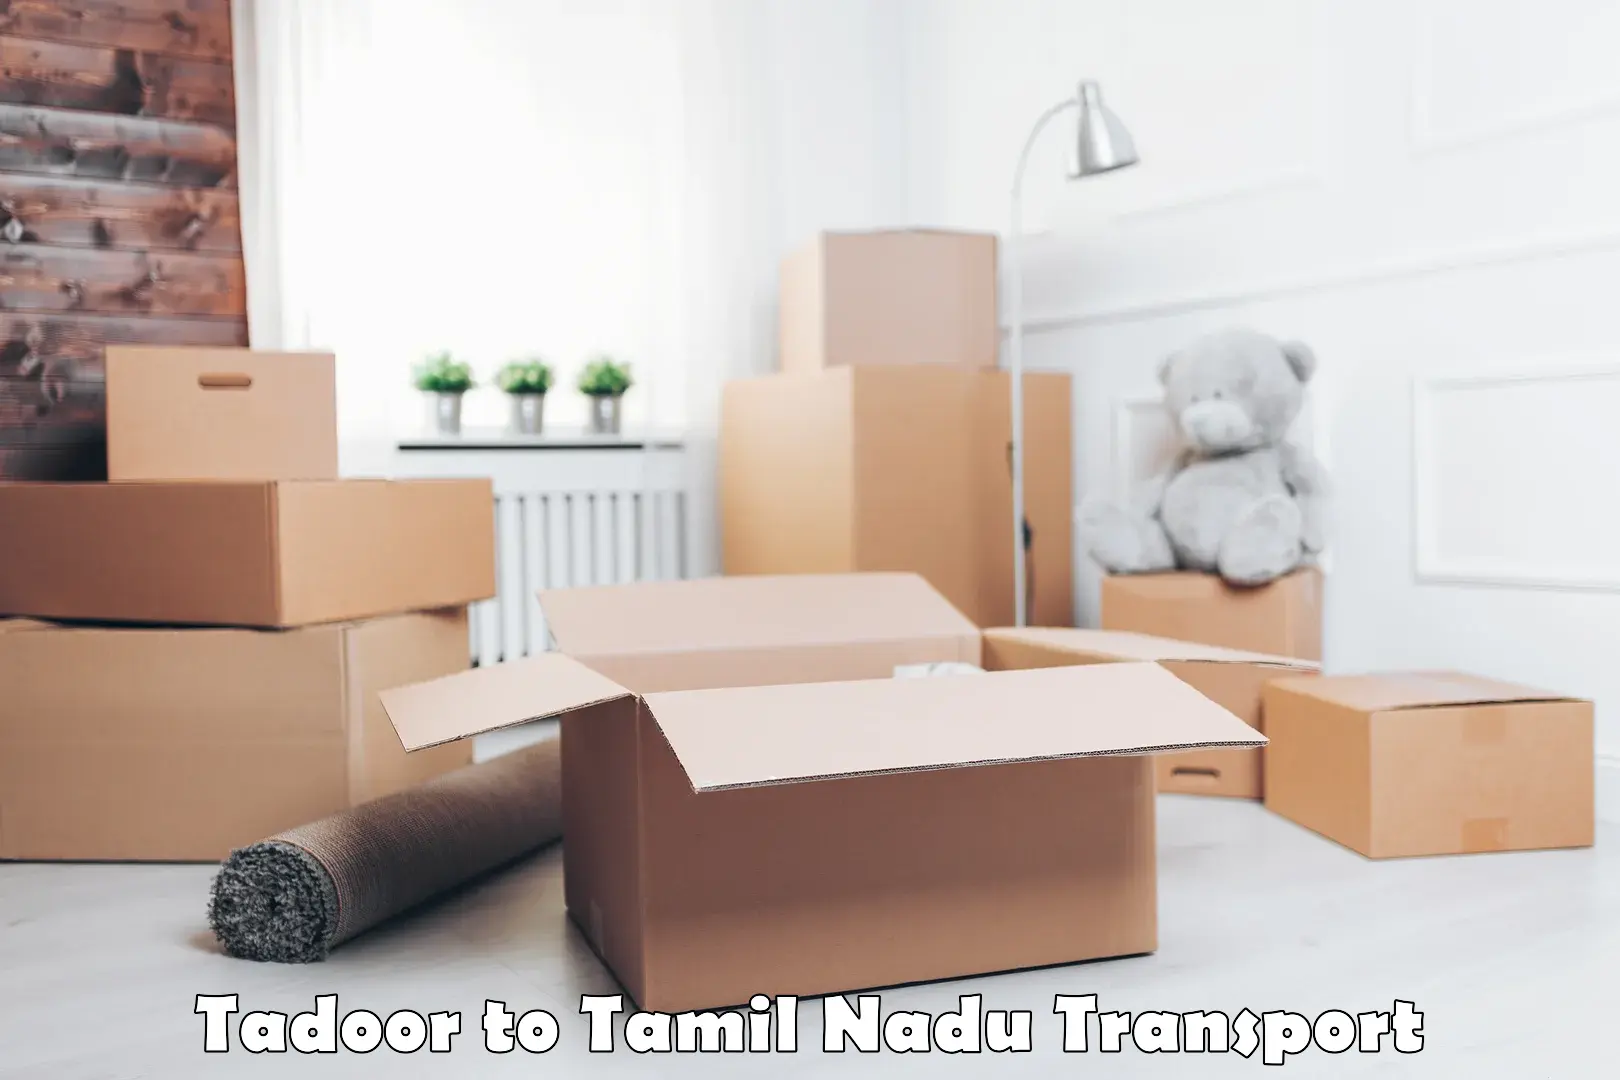 Nearest transport service Tadoor to Tiruvannamalai